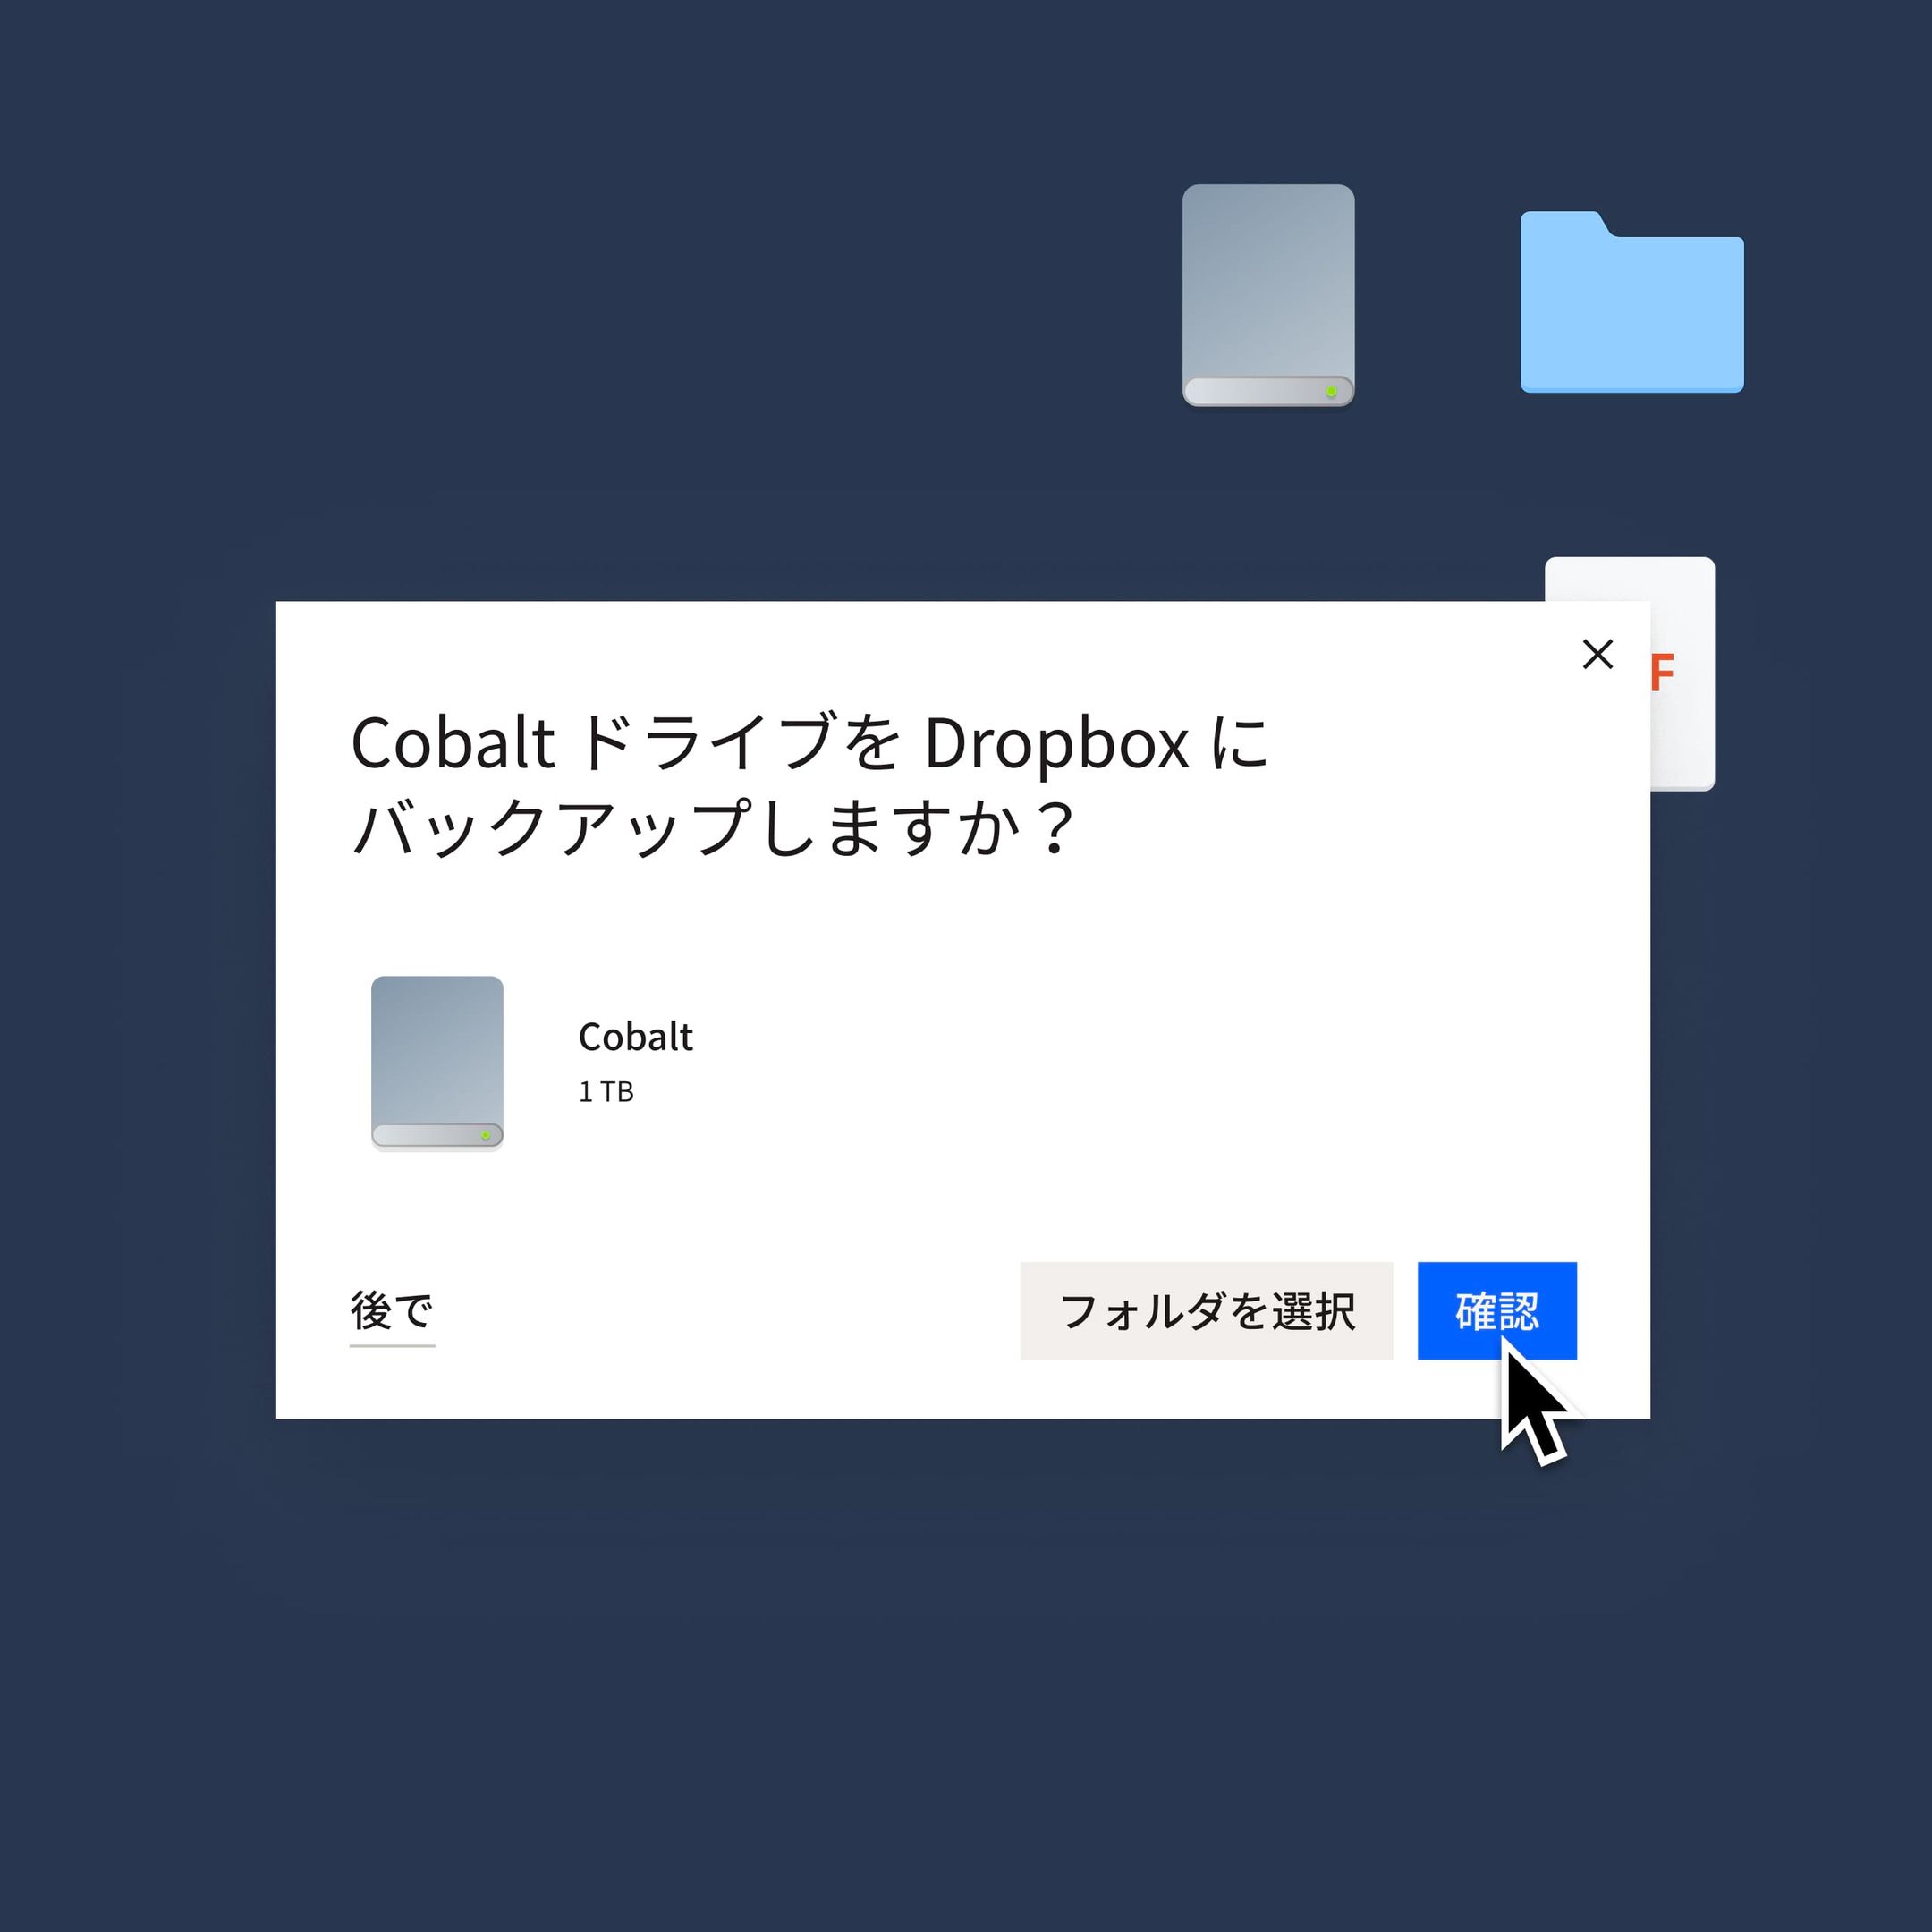 Cobalt ドライブを Dropbox にバックアップするために青い［確認］ボタンをクリックしているユーザー